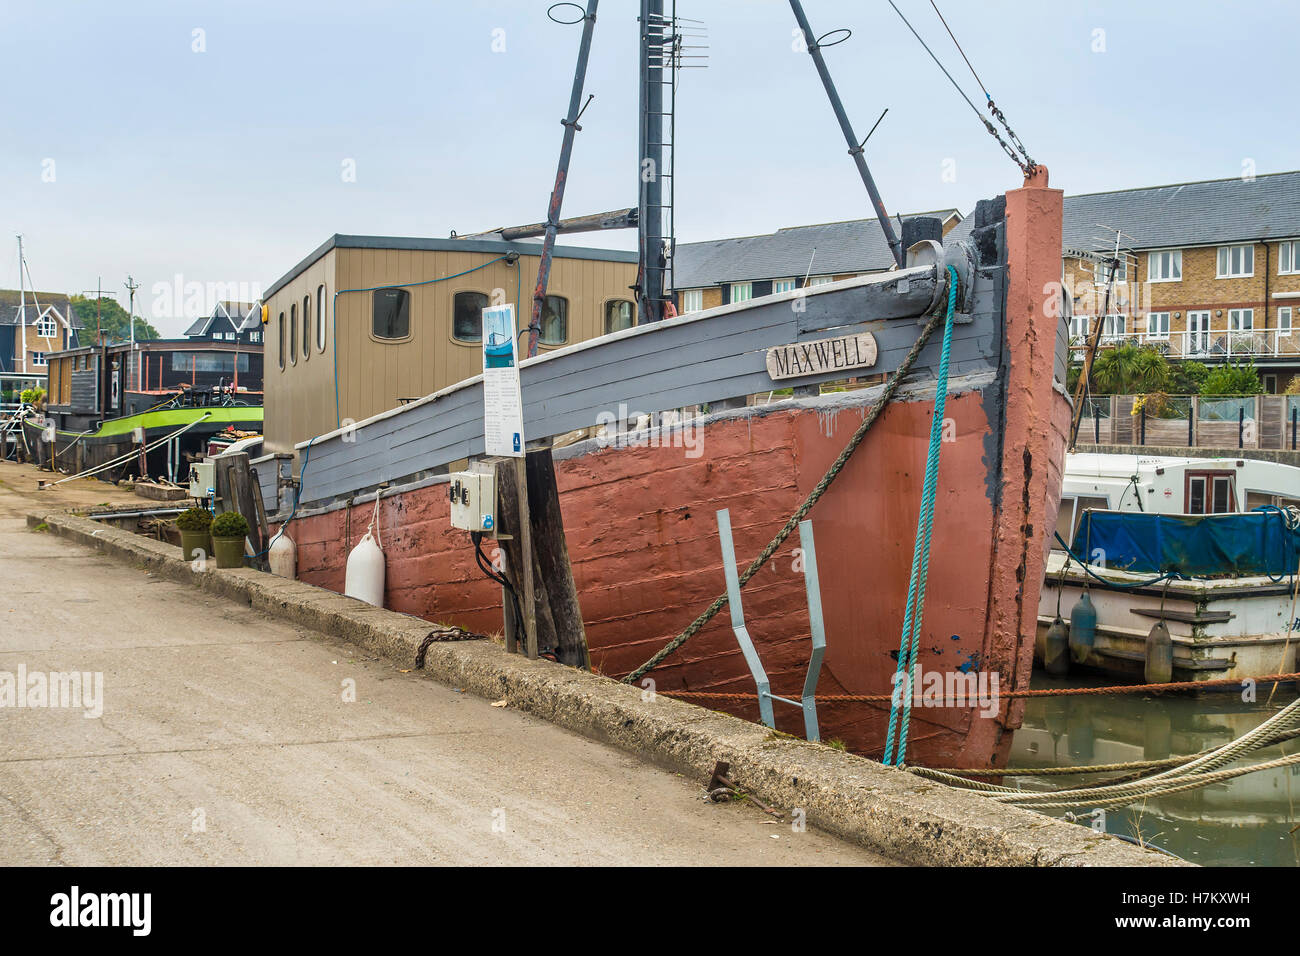 'Maxwell' arrastrero pesquero danés 1943 Estándar amarrados Quay Faversham Kent England Creek Foto de stock